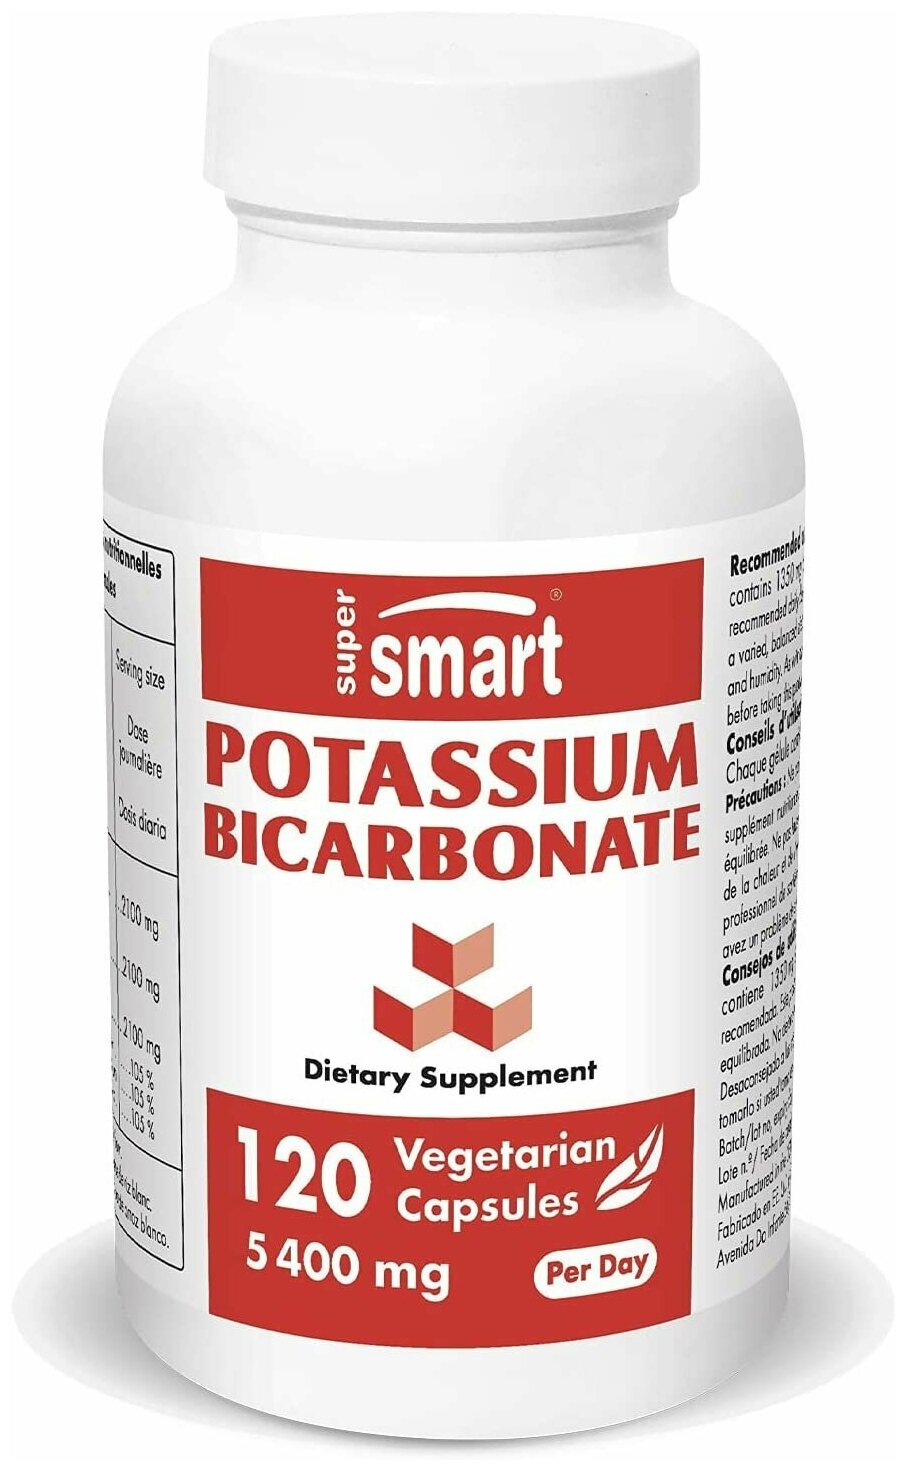 Supersmart - бикарбонат калия 5400 мг в день - для кислотно-щелочного баланса и здоровой сердечно-сосудистой системы Без ГМО и глютена - 120 Вегетарианские капсулы США